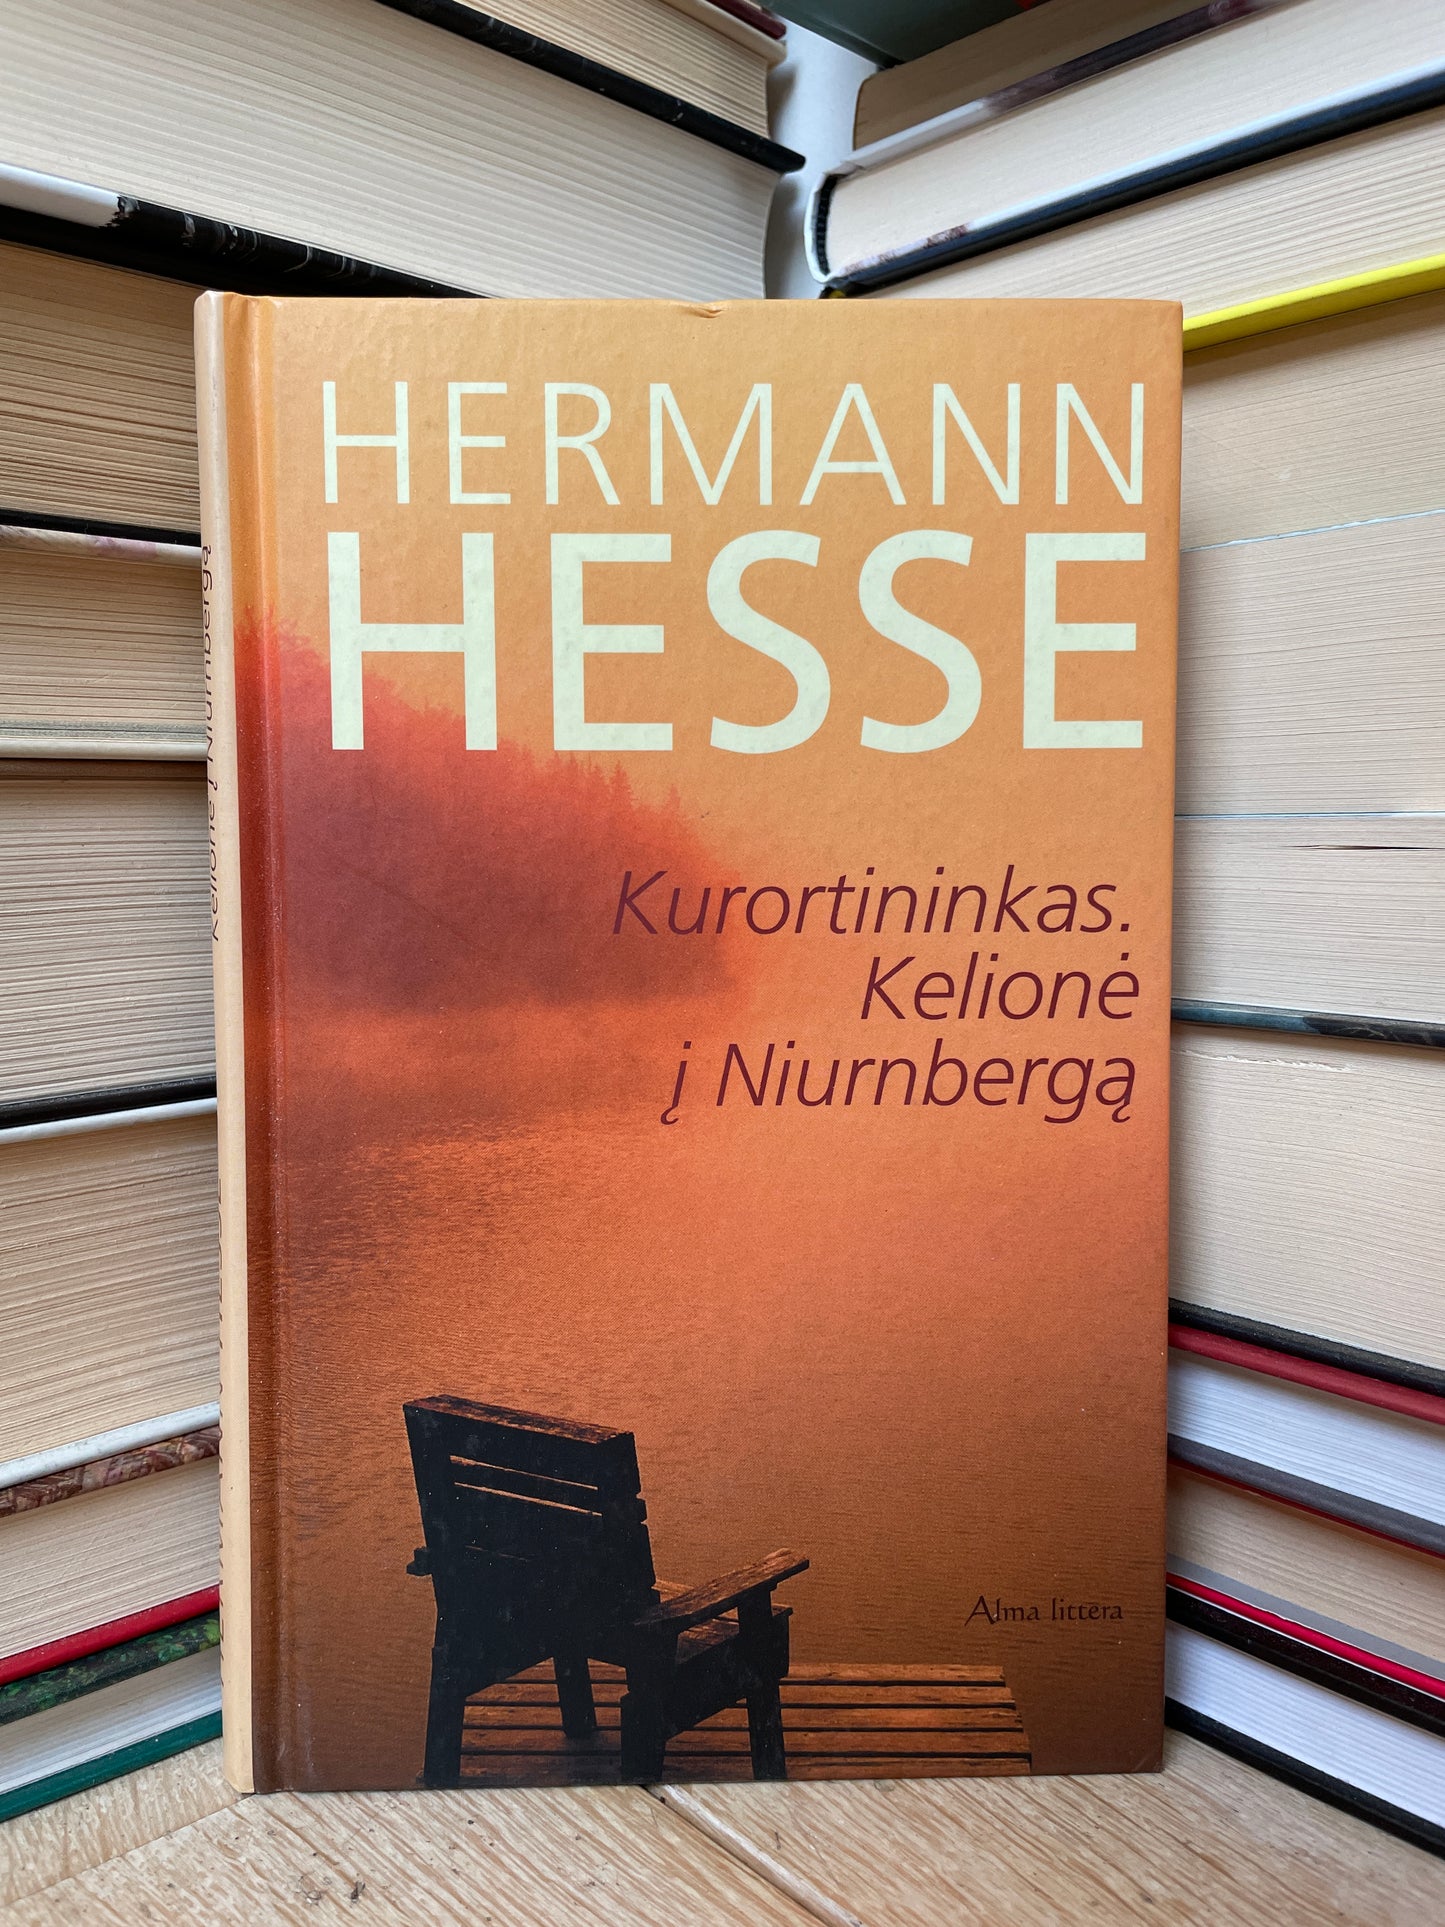 Hermann Hesse - ,,Kurortininkas. Kelionė į Niurnbergą"